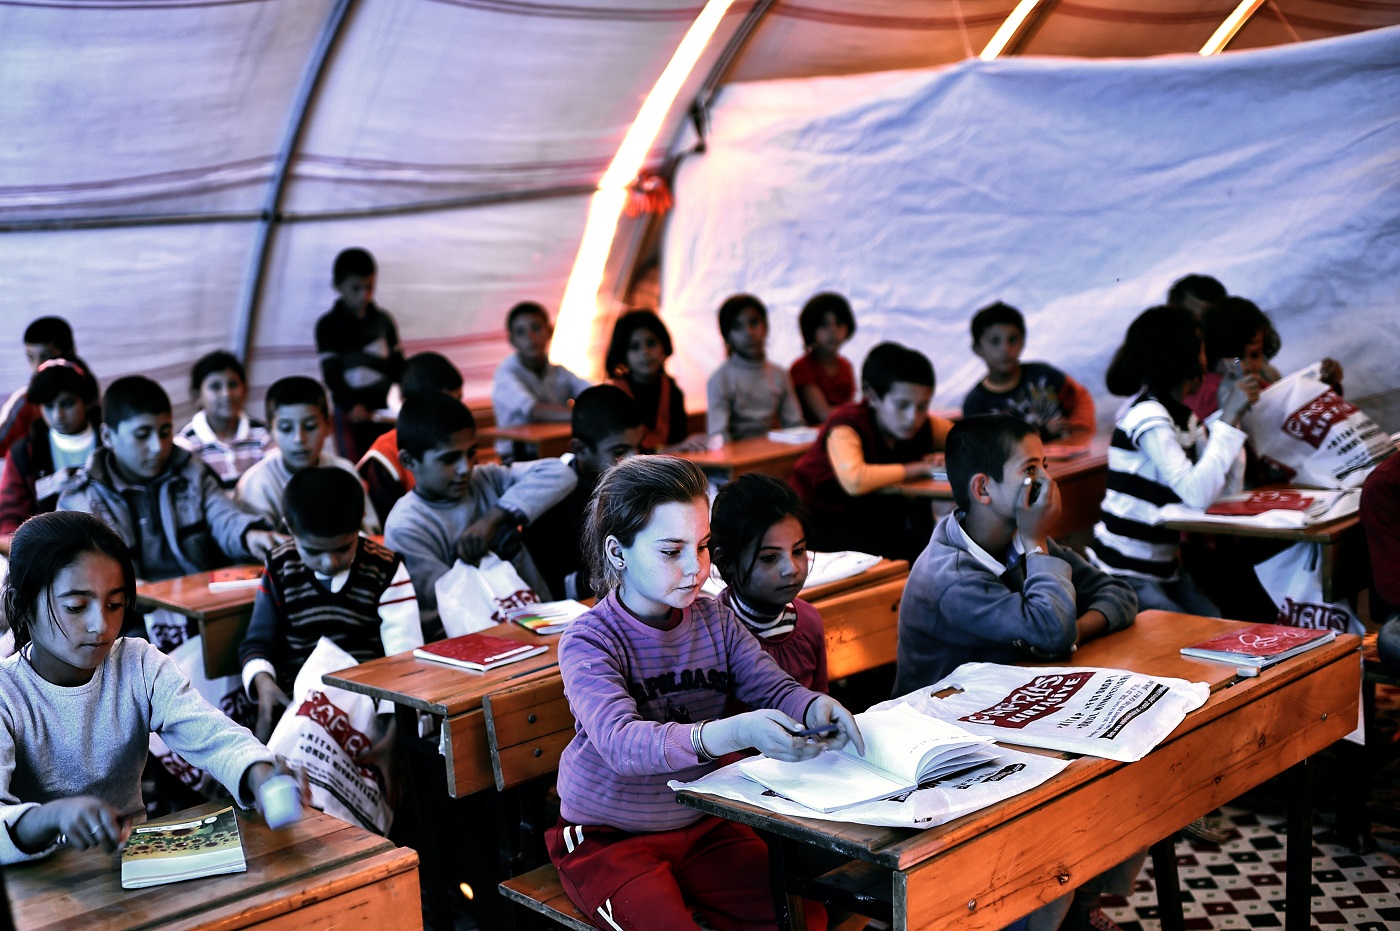 اللاجئون السوريون: تقييم نفسي اجتماعي للتهجير القسري بسبب الحرب